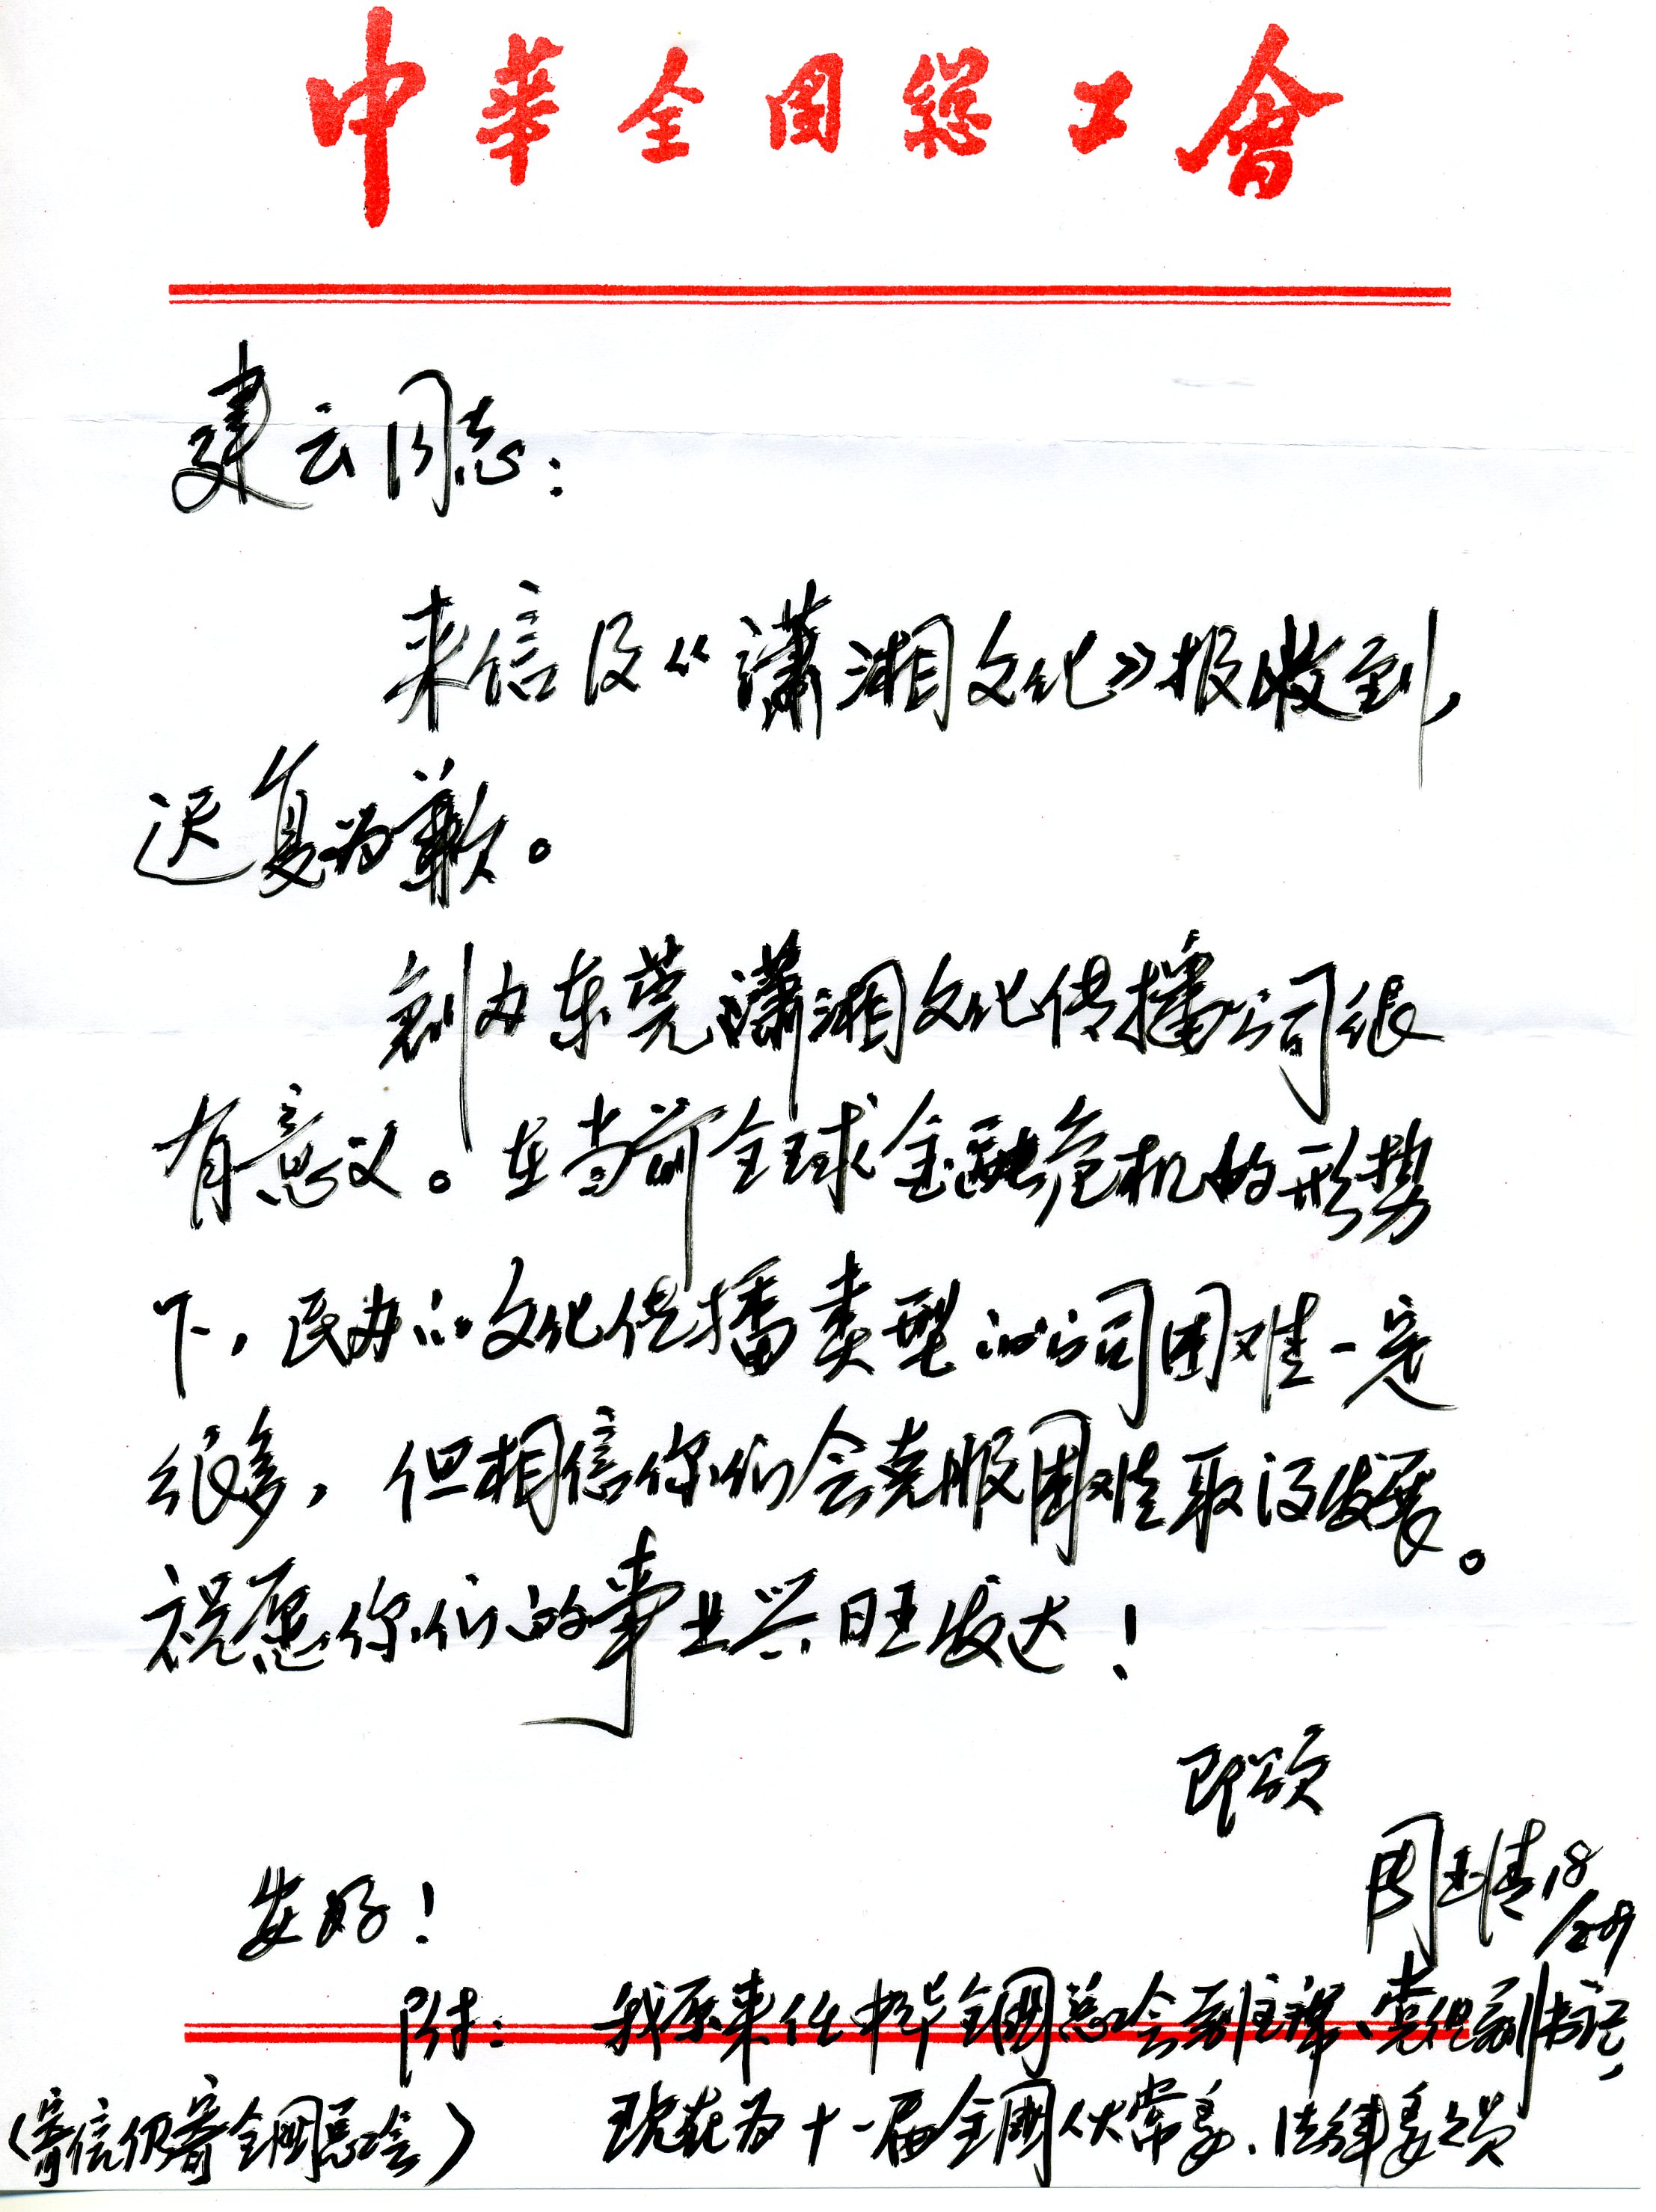 原中华全国总工会副主席周玉清会给我回信